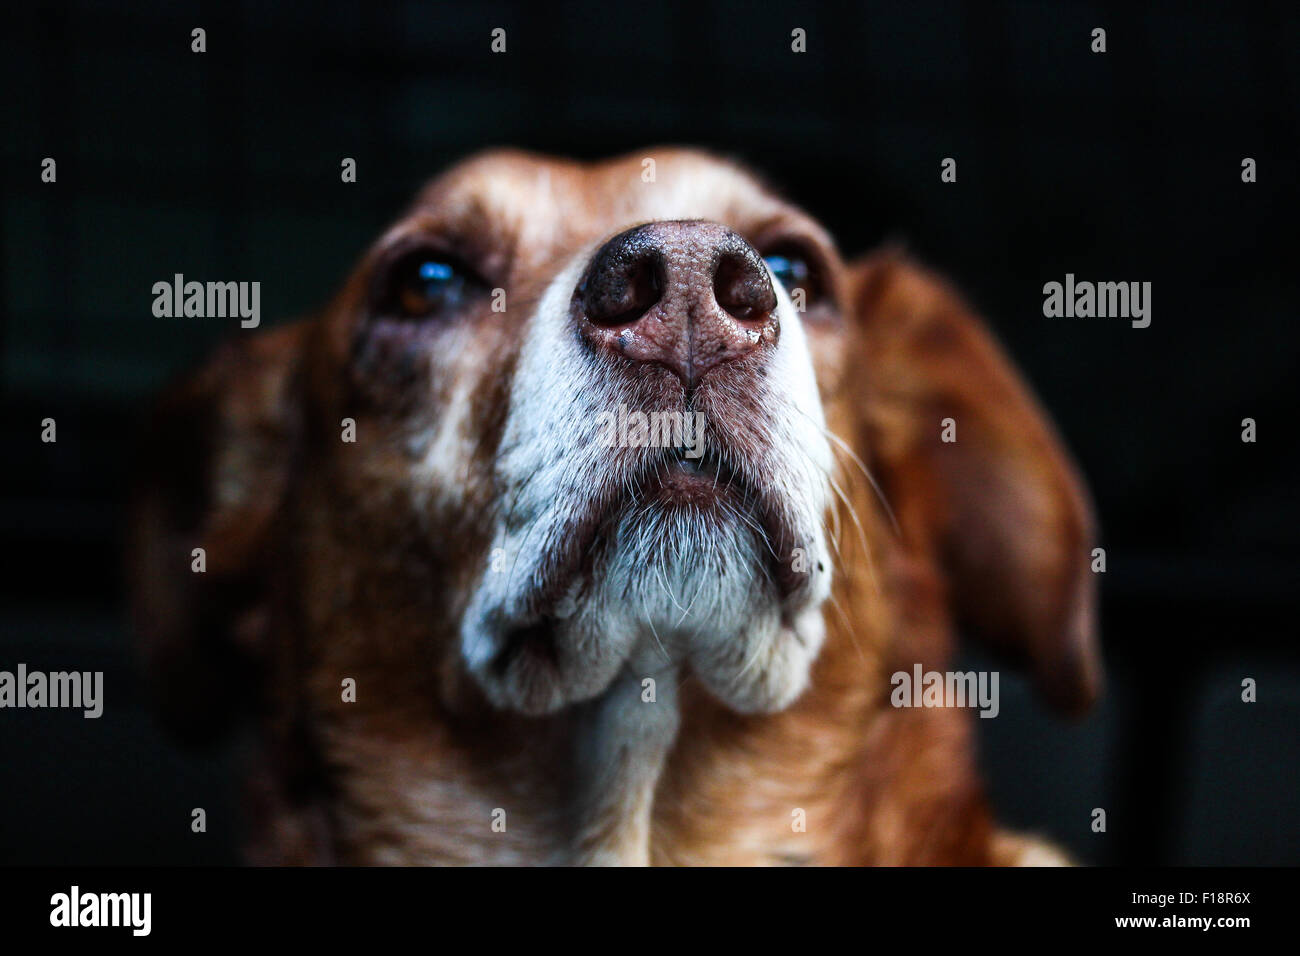 Ein Hundeportrait bei dem die wachen Augen in der HIntergrundunschärfe liegen, die angegraute Schnauze den Mittelpunkt bildet. Stock Photo